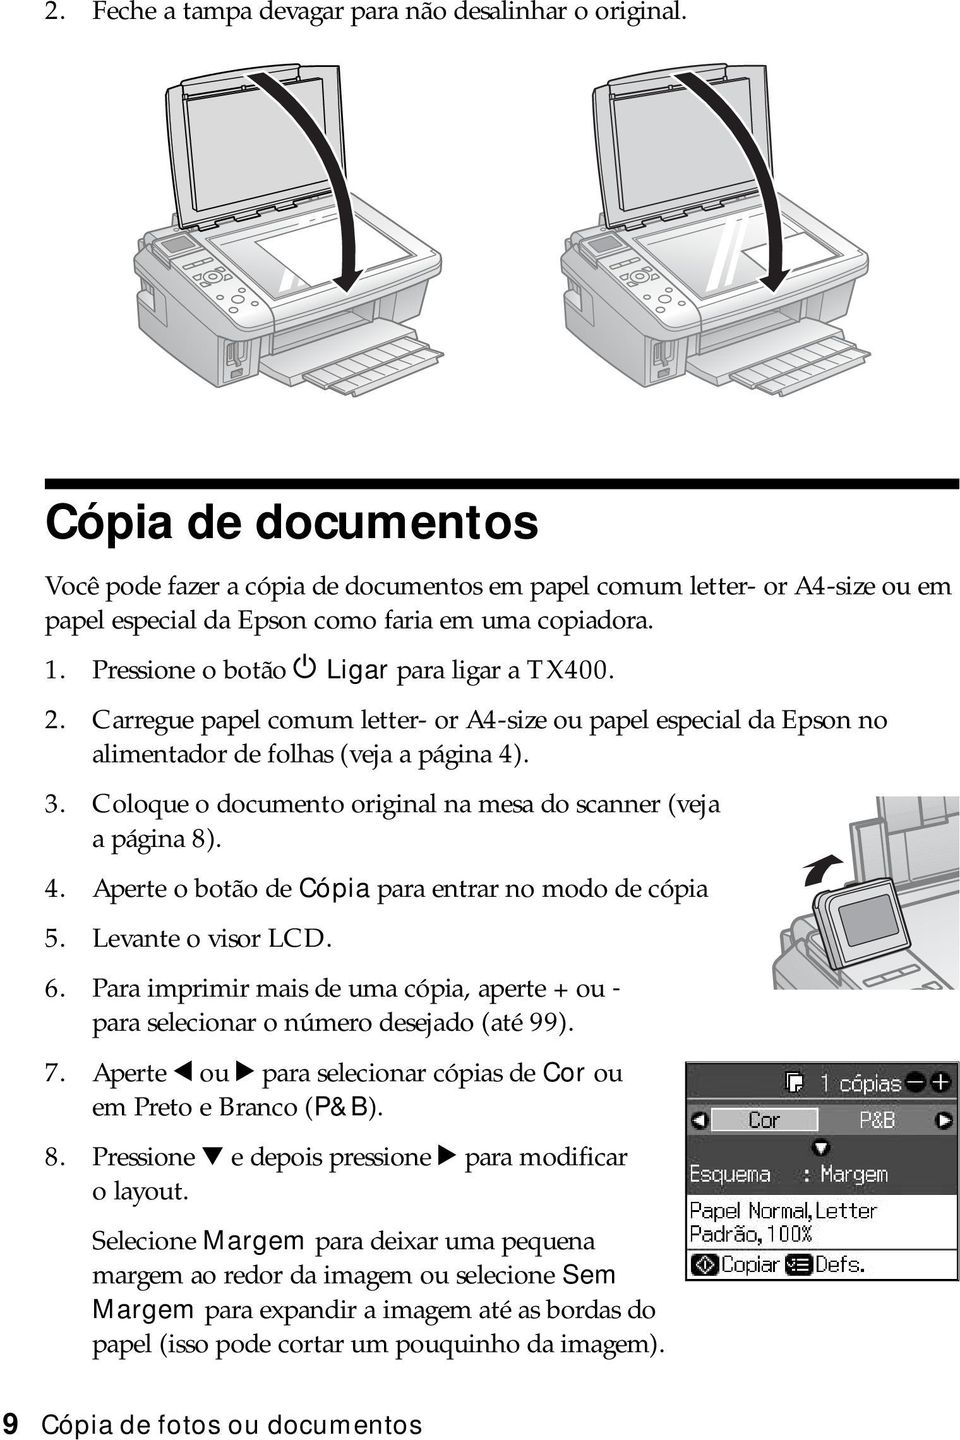 2. Carregue papel comum letter- or A4-size ou papel especial da Epson no alimentador de folhas (veja a página 4). 3. Coloque o documento original na mesa do scanner (veja apágina8). 4. Aperte o botão de Cópia para entrar no modo de cópia 5.